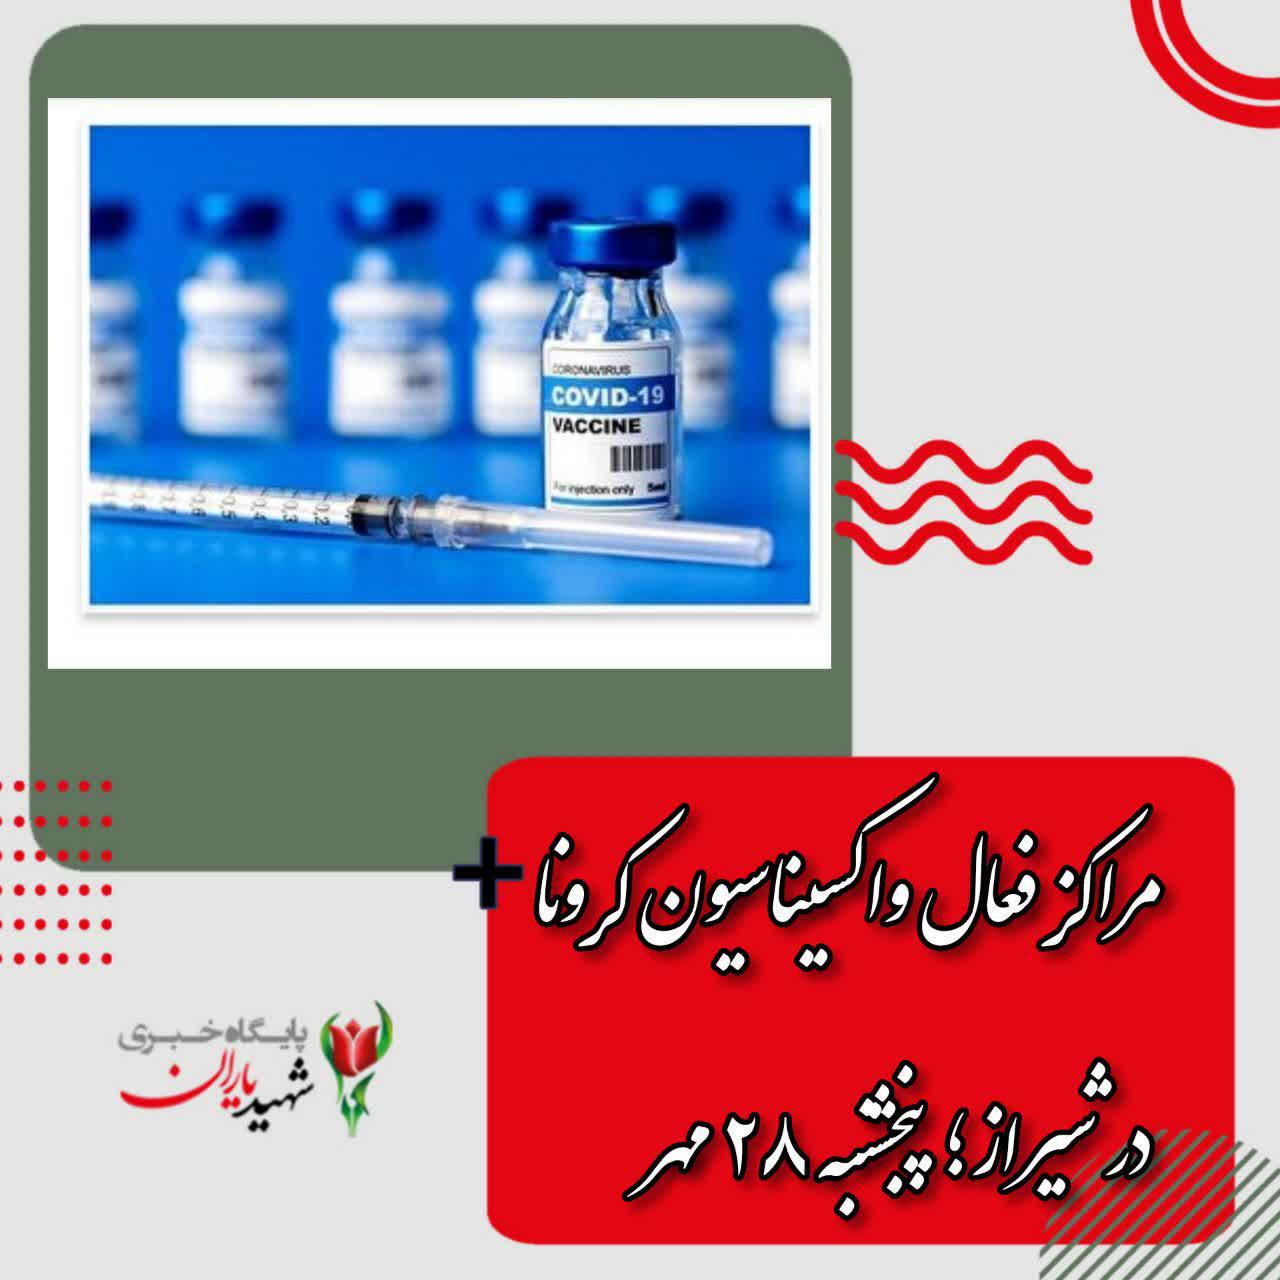 مراکز فعال واکسیناسیون کرونا در شیراز؛ پنجشنبه ۲۸ مهر